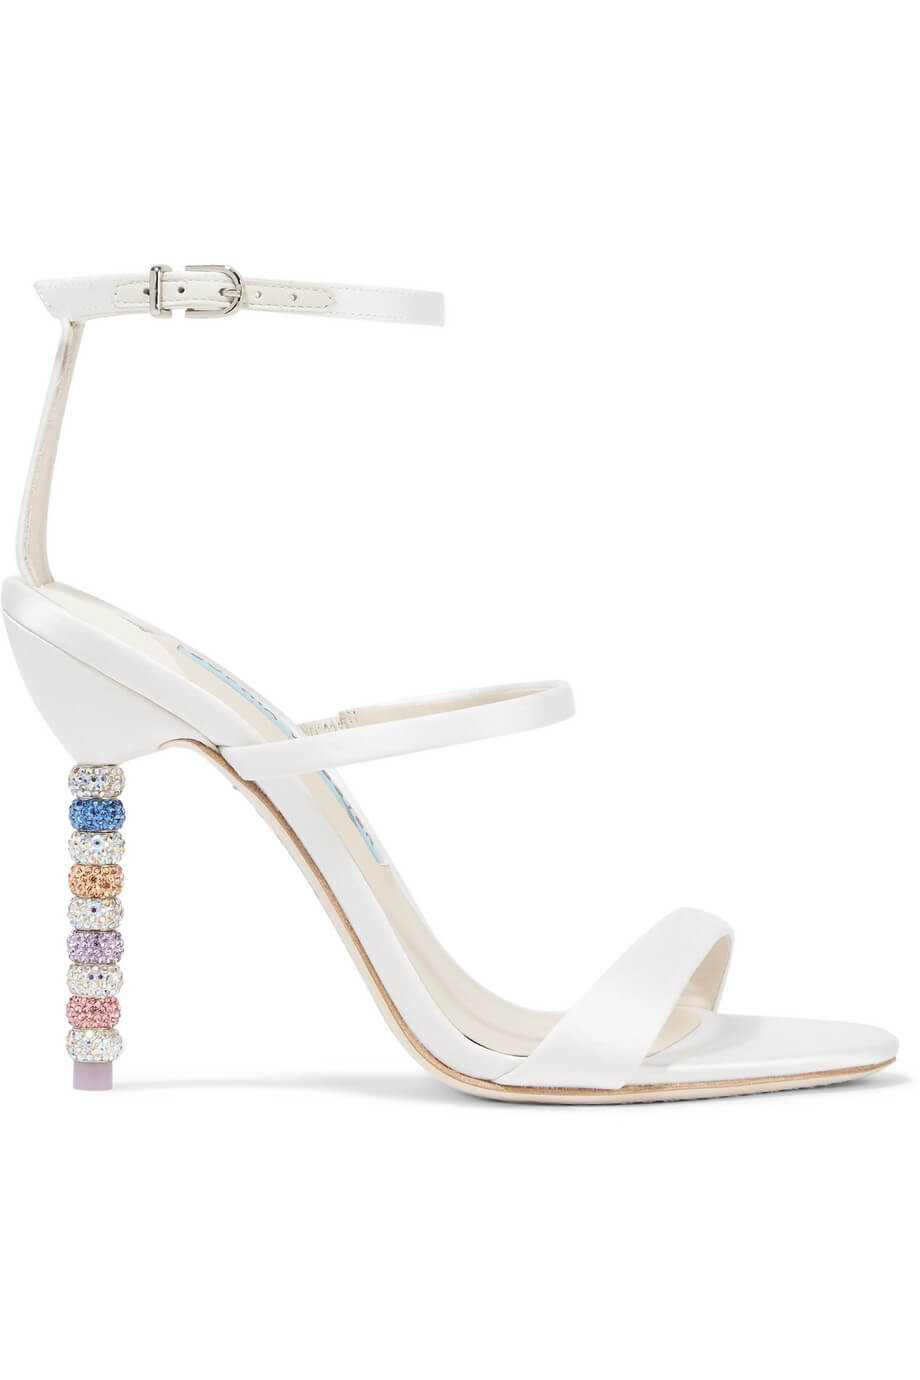 Sophia Webster Rosalind embellished white sandals